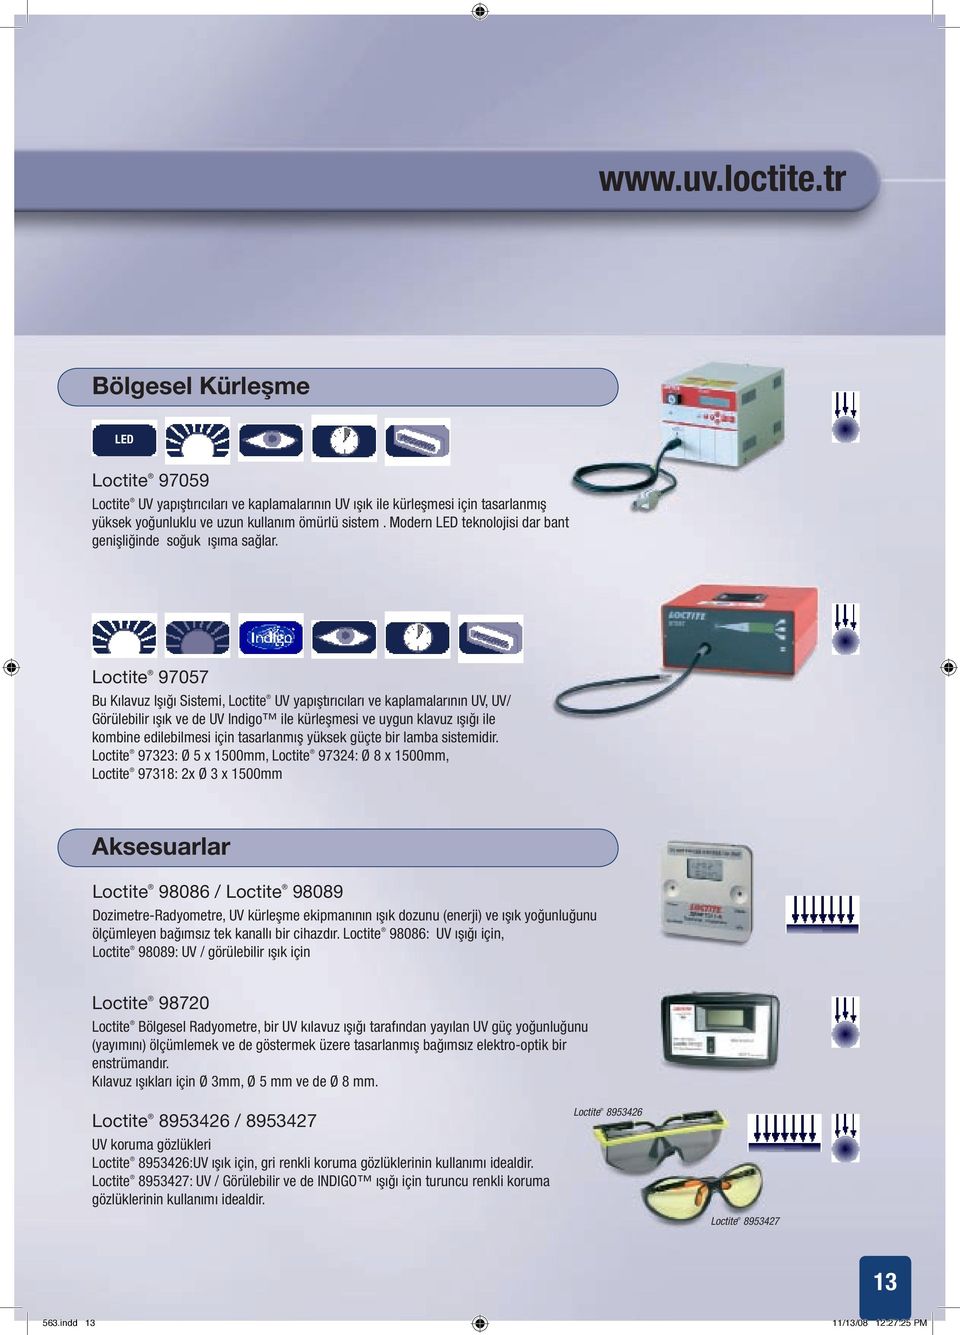 Loctite 97057 Bu Kılavuz Işığı Sistemi, Loctite UV yapıştırıcıları ve kaplamalarının UV, UV/ Görülebilir ışık ve de UV Indigo ile kürleşmesi ve uygun klavuz ışığı ile kombine edilebilmesi için